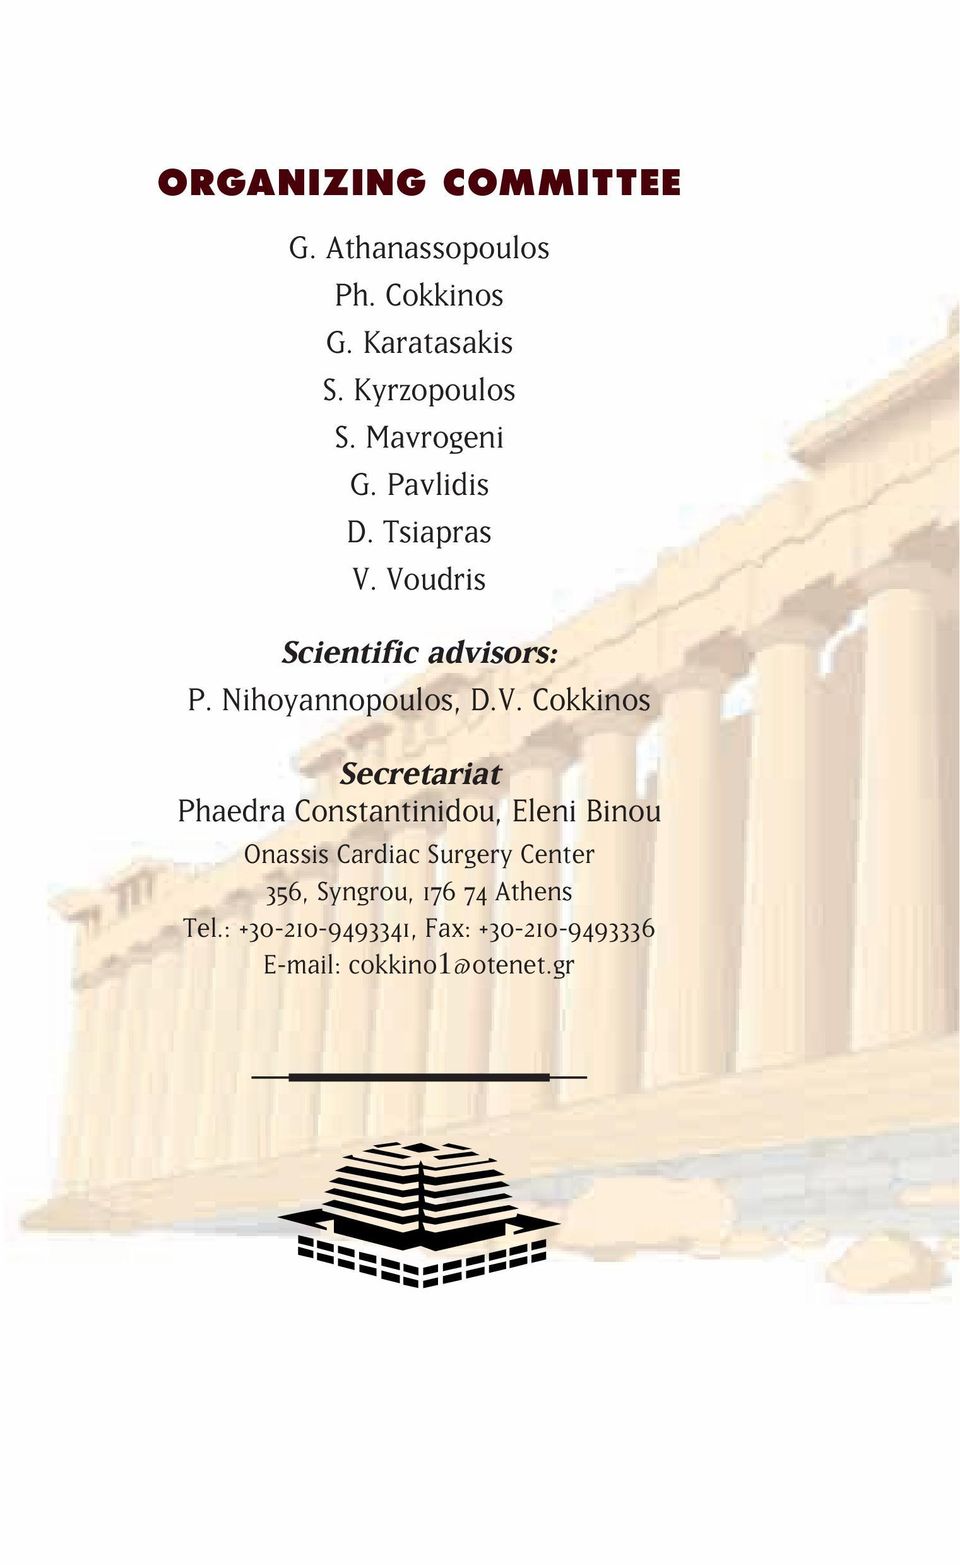 Voudris Scientific advisors: P. Nihoyannopoulos, D.V. Cokkinos Secretariat Phaedra